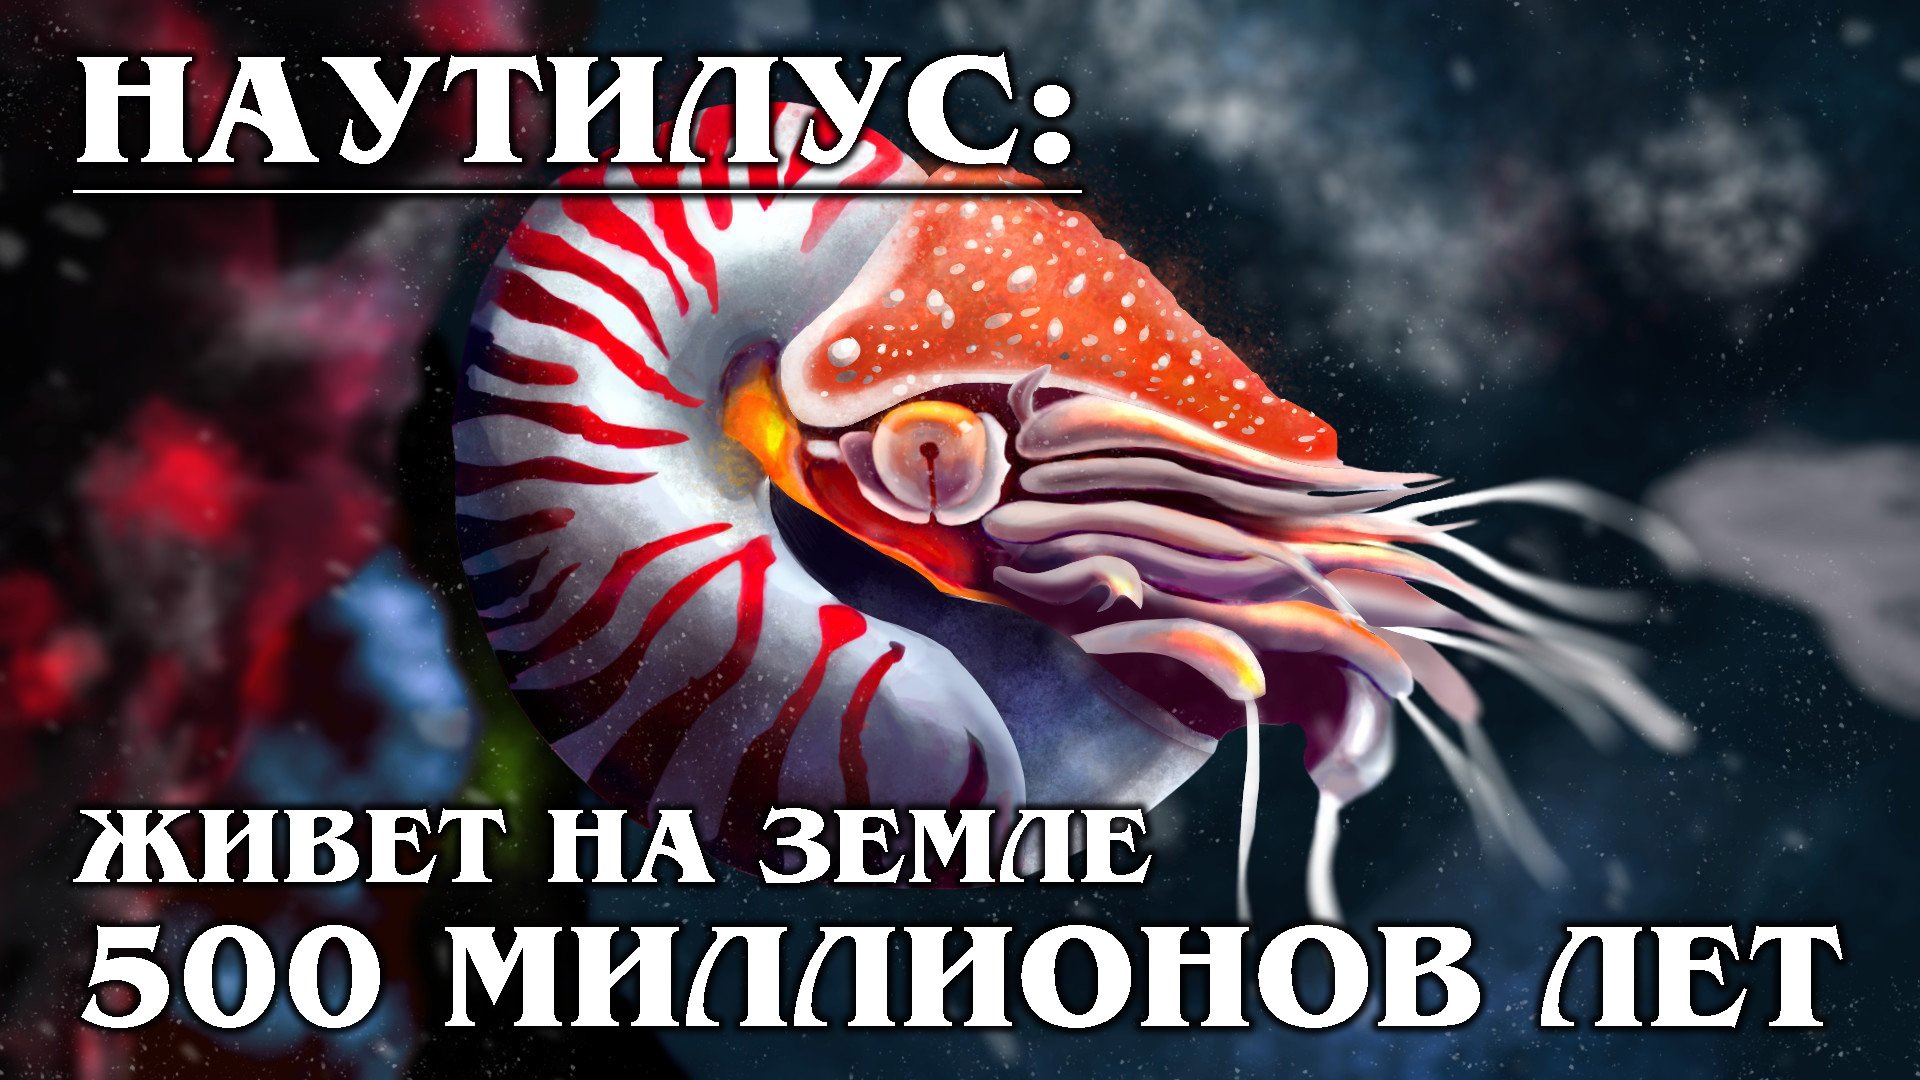 НАУТИЛУС:  Фантастические чудеса регенерации древнего моллюска  | Факты про морских обитателей